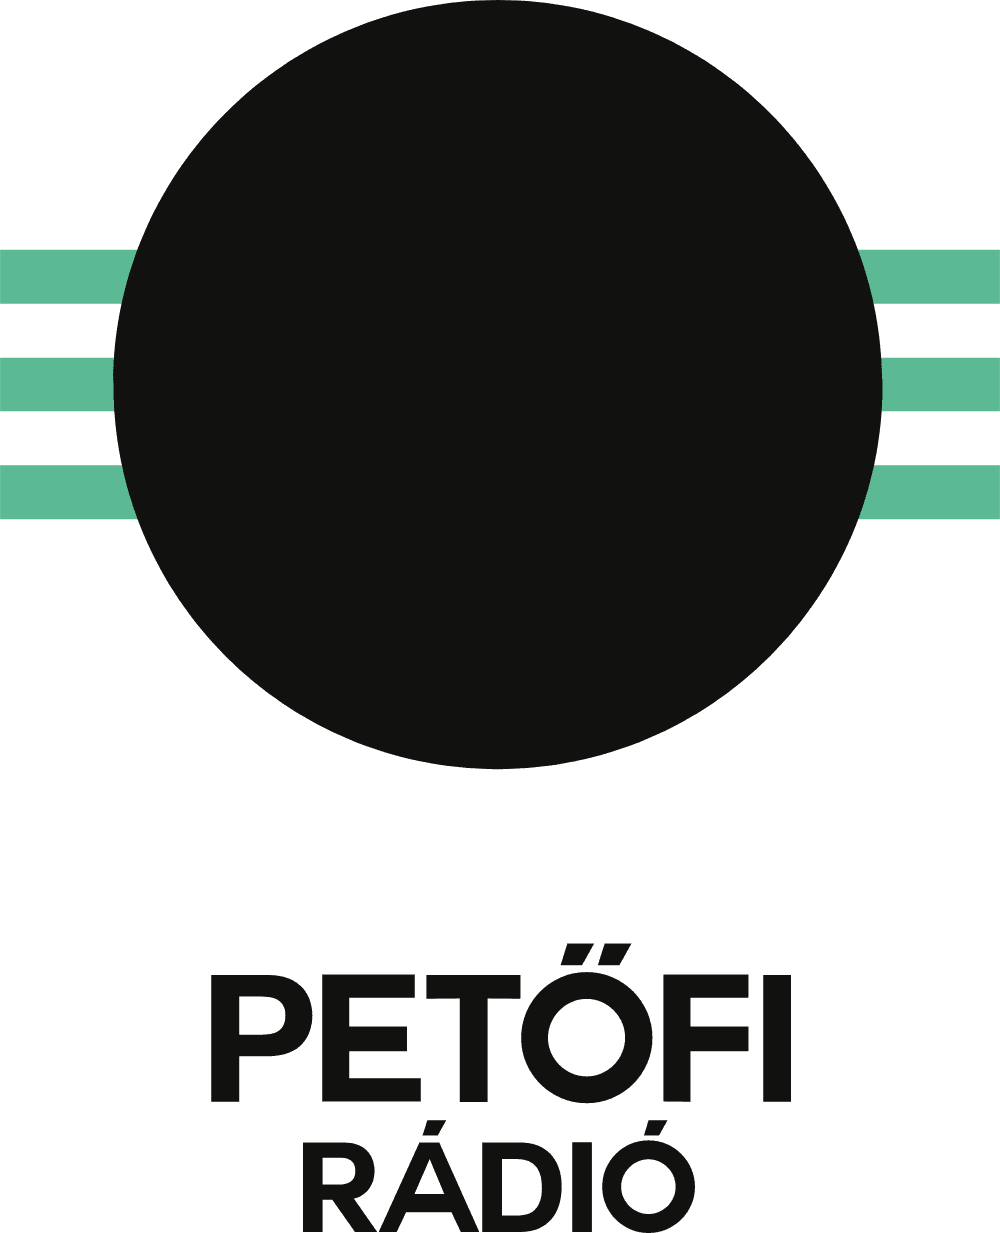 Petofi Radio Logo download